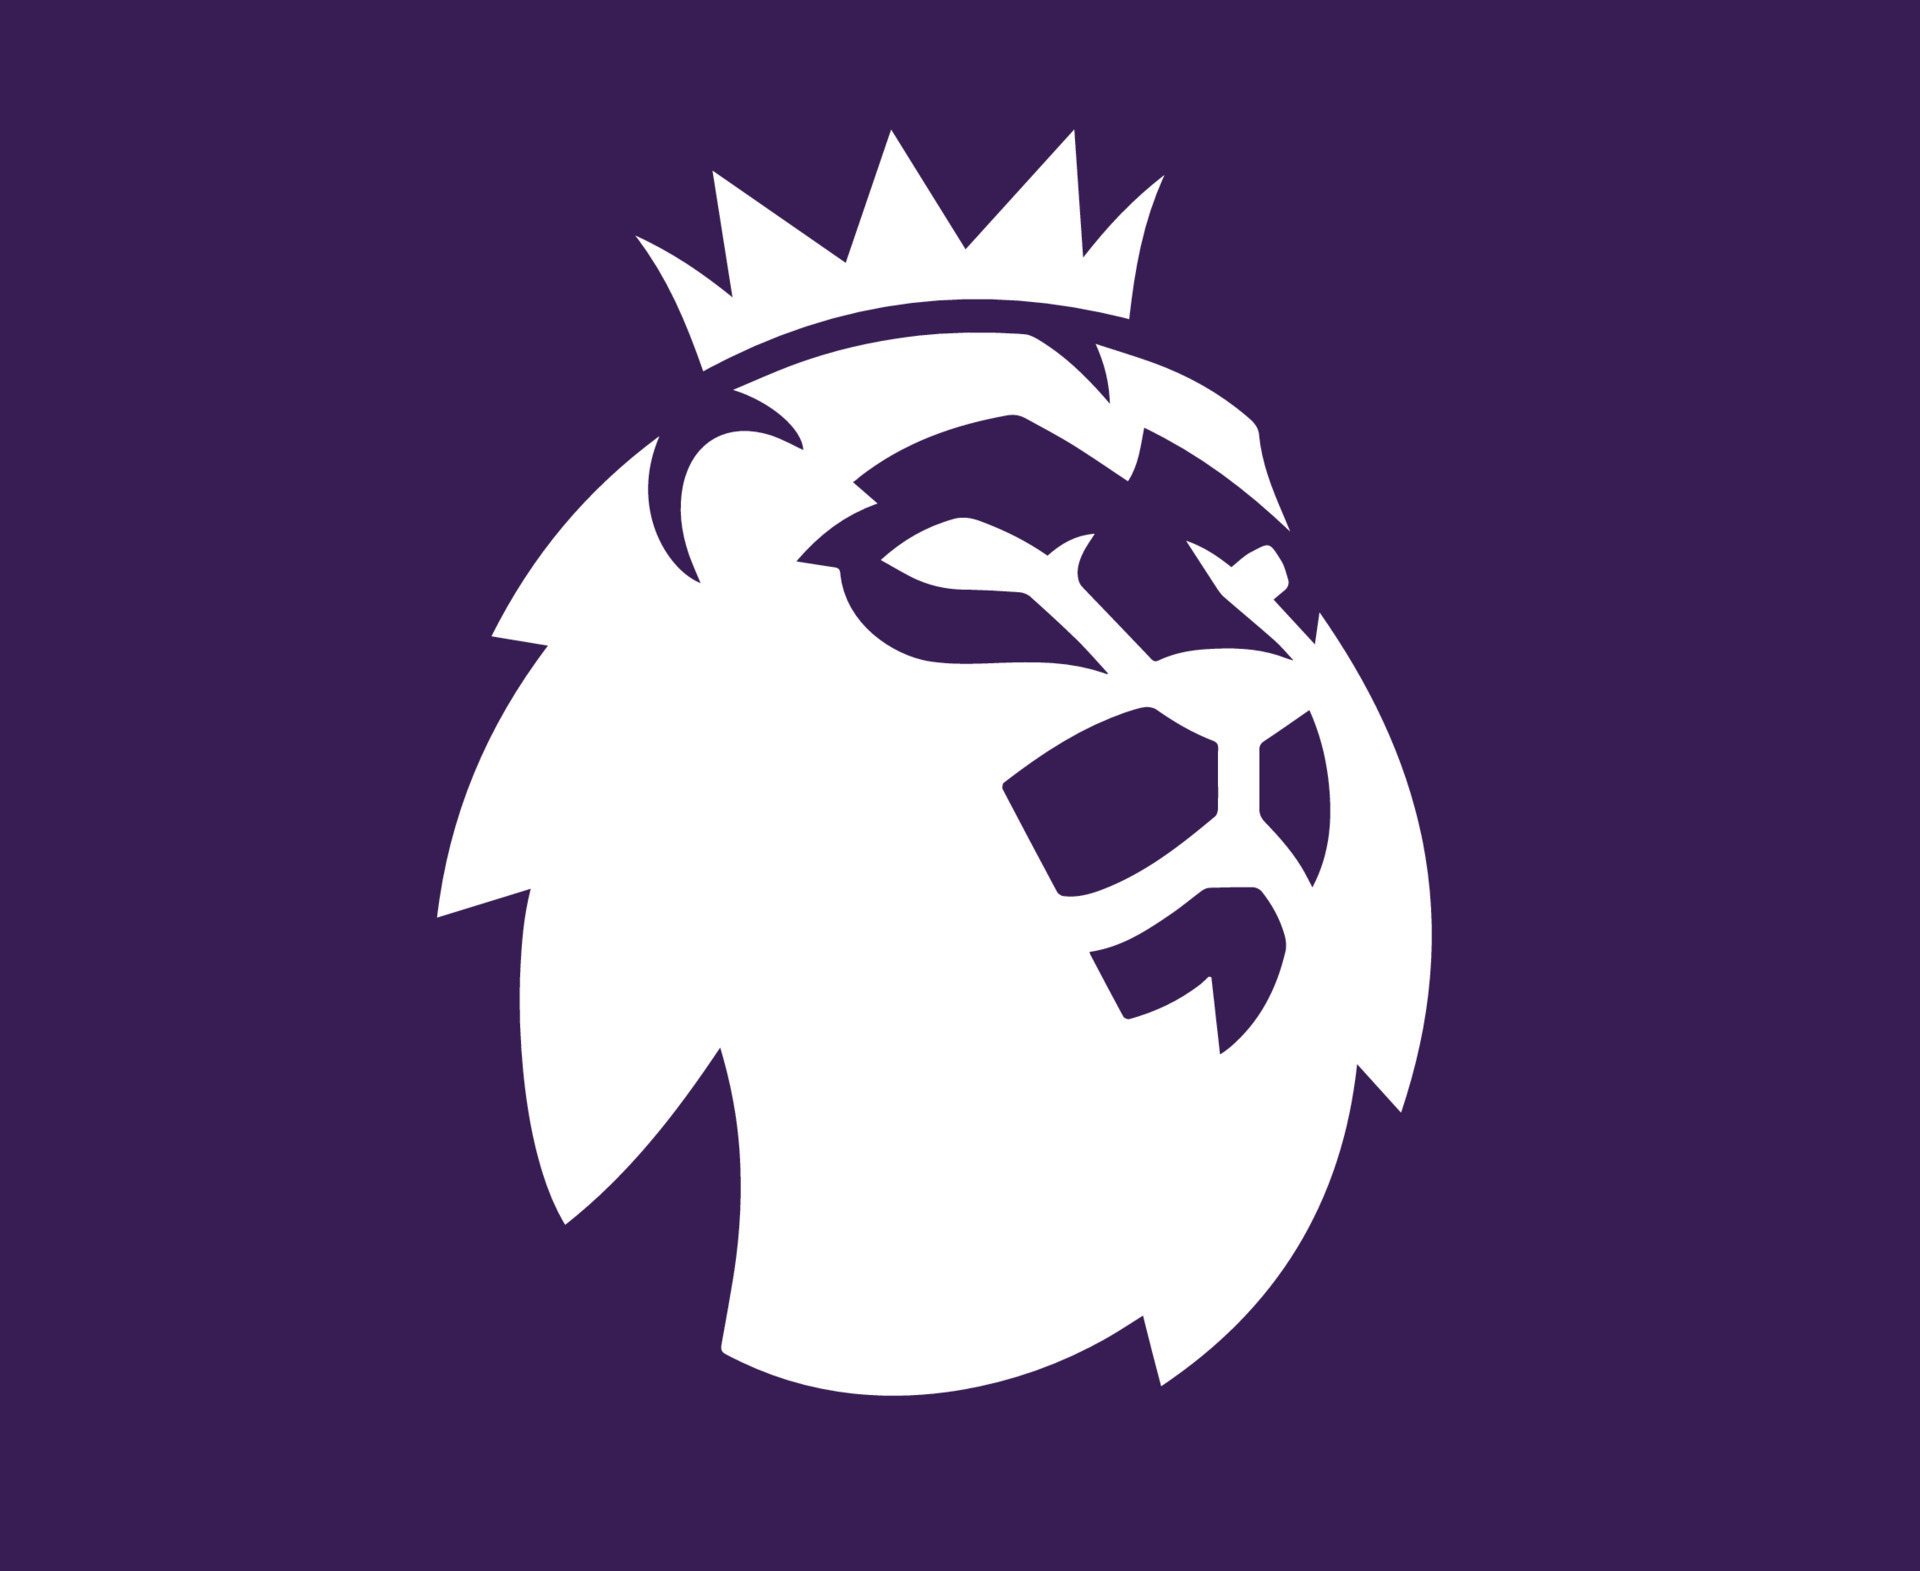 Để thể hiện tình yêu bóng đá của mình, hãy đặt logo nổi tiếng của Giải Ngoại hạng Anh (Premier League) làm ảnh nền cho máy tính của mình. Với logo chính thức đầy mạnh mẽ này, bạn sẽ tỏa sáng với đồng đội trong hội thoại trực tuyến.